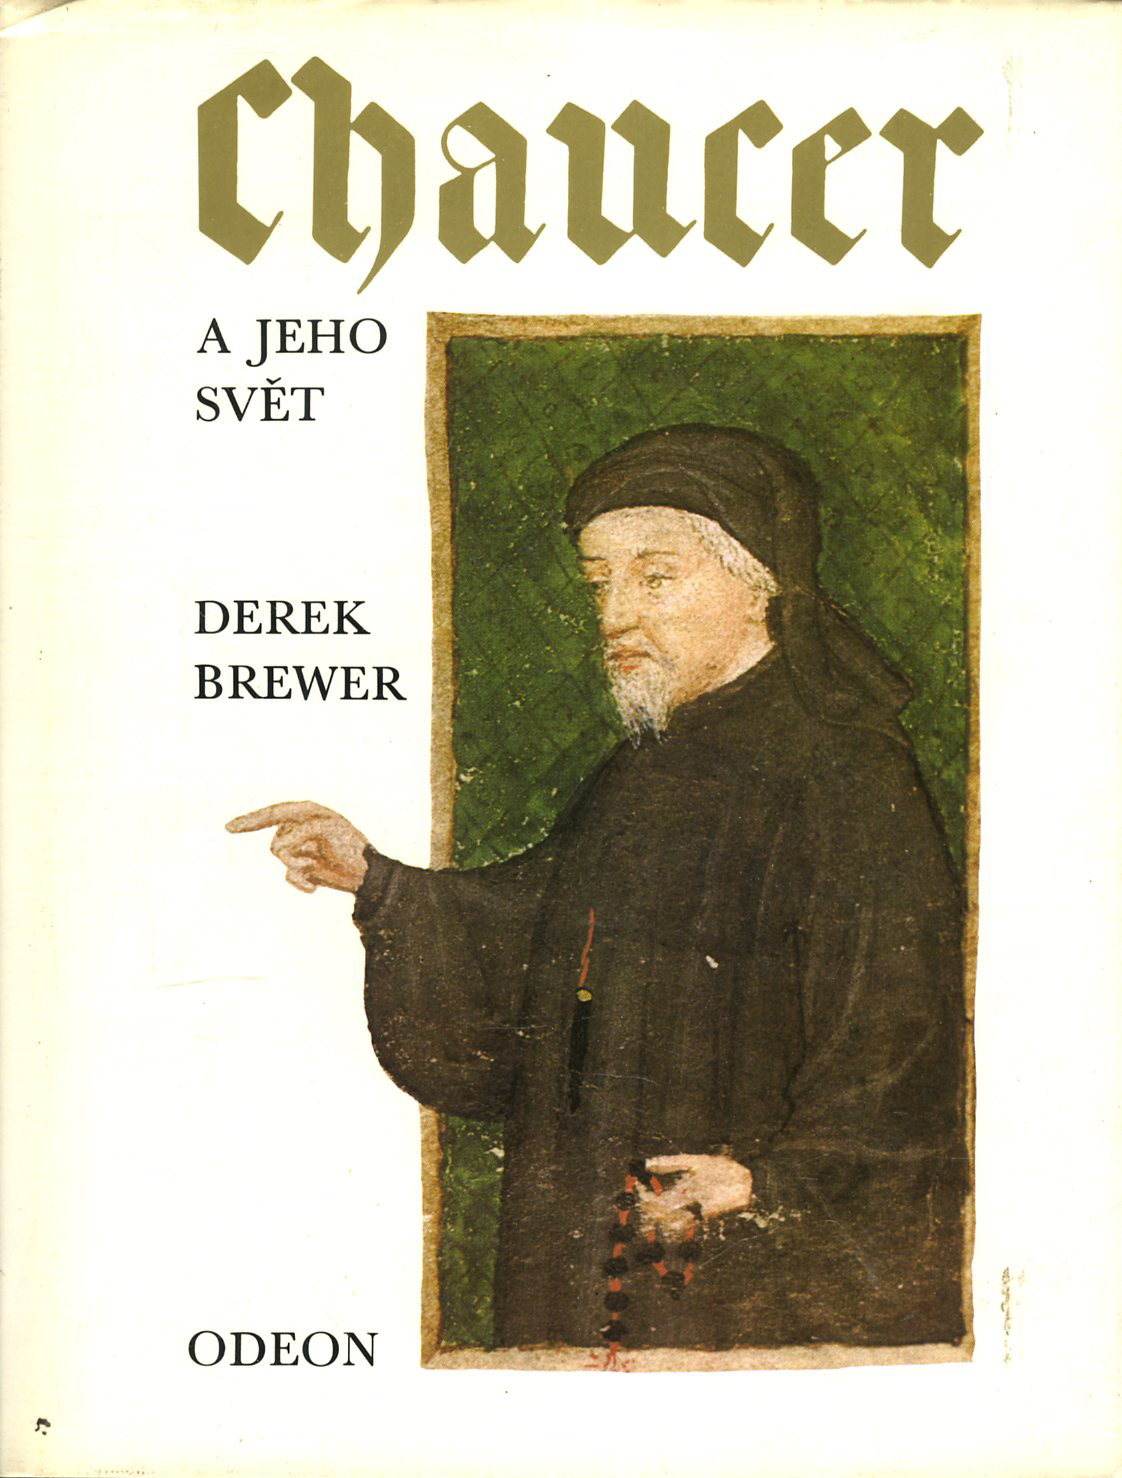 Chaucer a jeho svět (Derek Brewer)